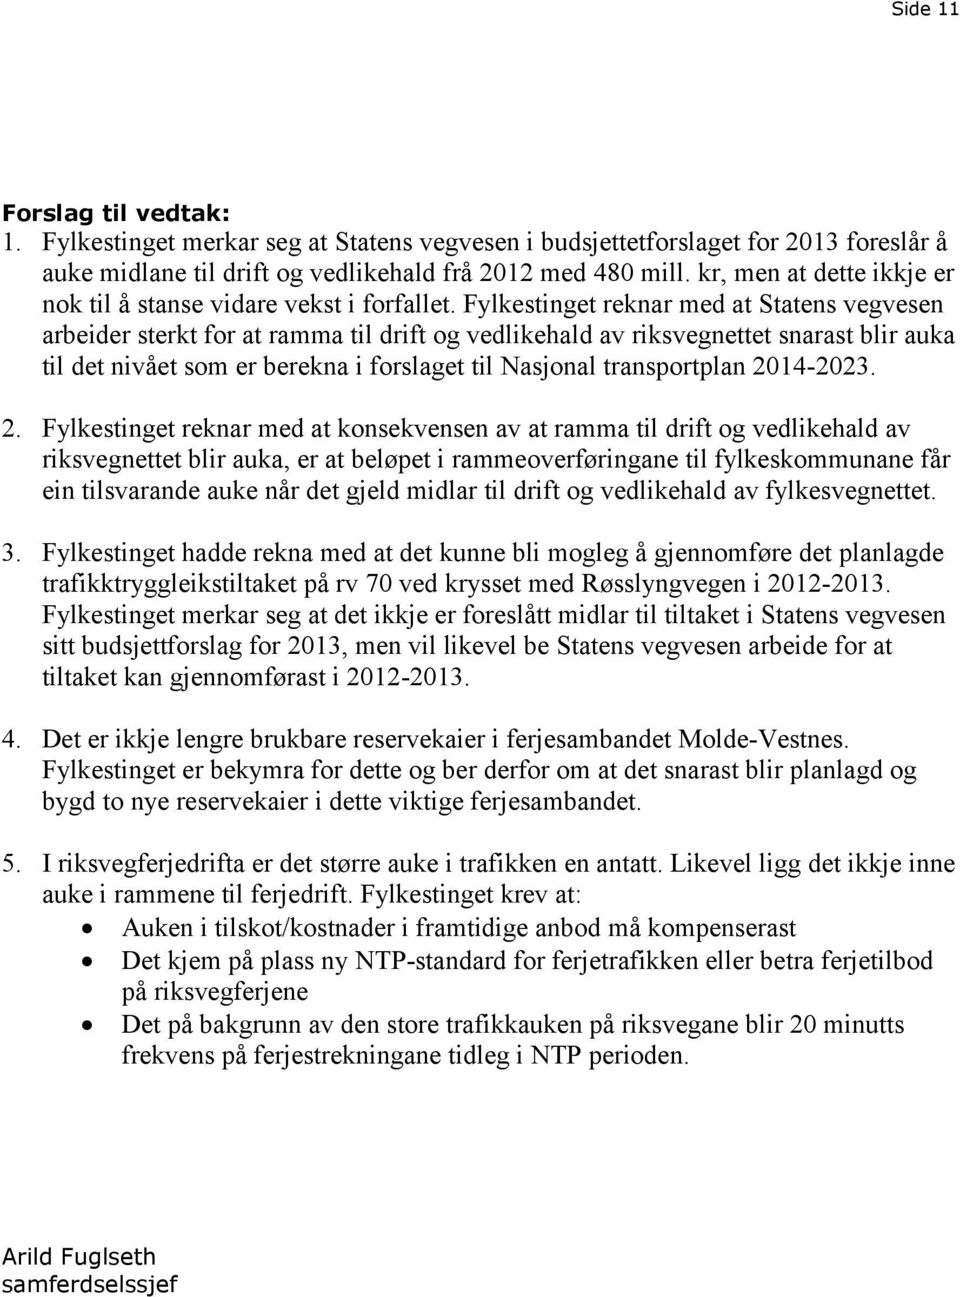 Fylkestinget reknar med at Statens vegvesen arbeider sterkt for at ramma til drift og vedlikehald av riksvegnettet snarast blir auka til det nivået som er berekna i forslaget til Nasjonal